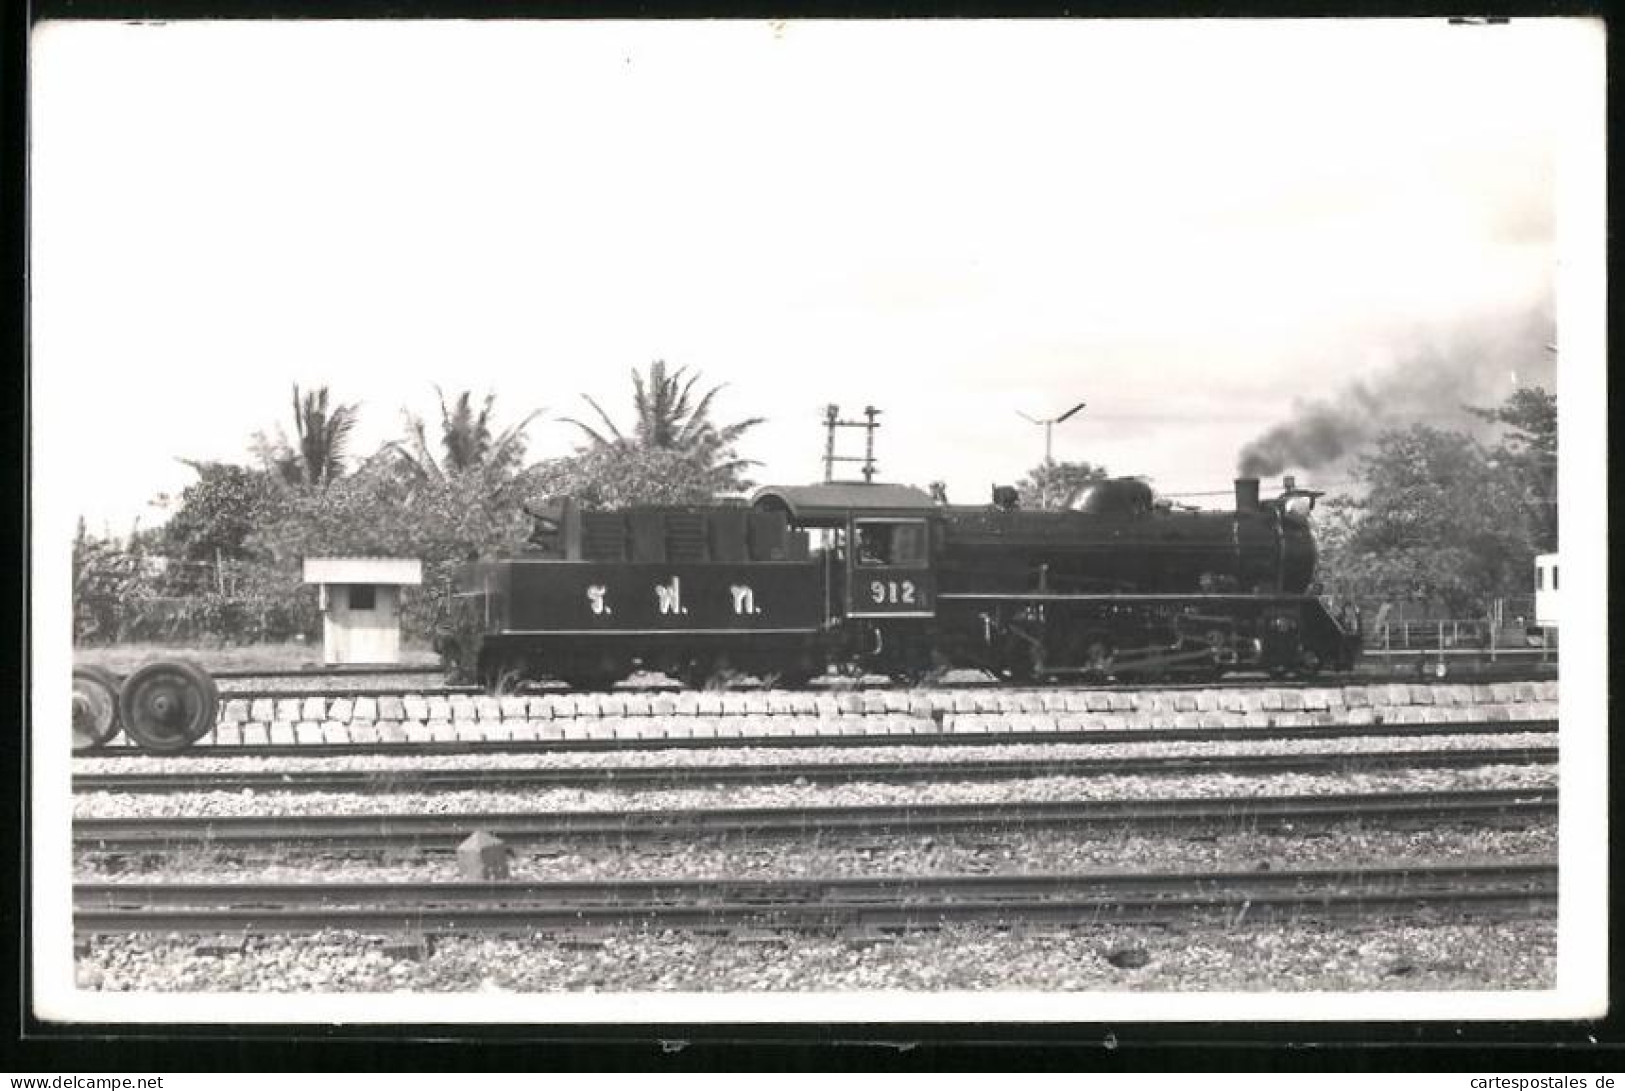 Fotografie Britische Eisenbahn, Dampflok, Tender-Lokomotive Nr. 912  - Treinen